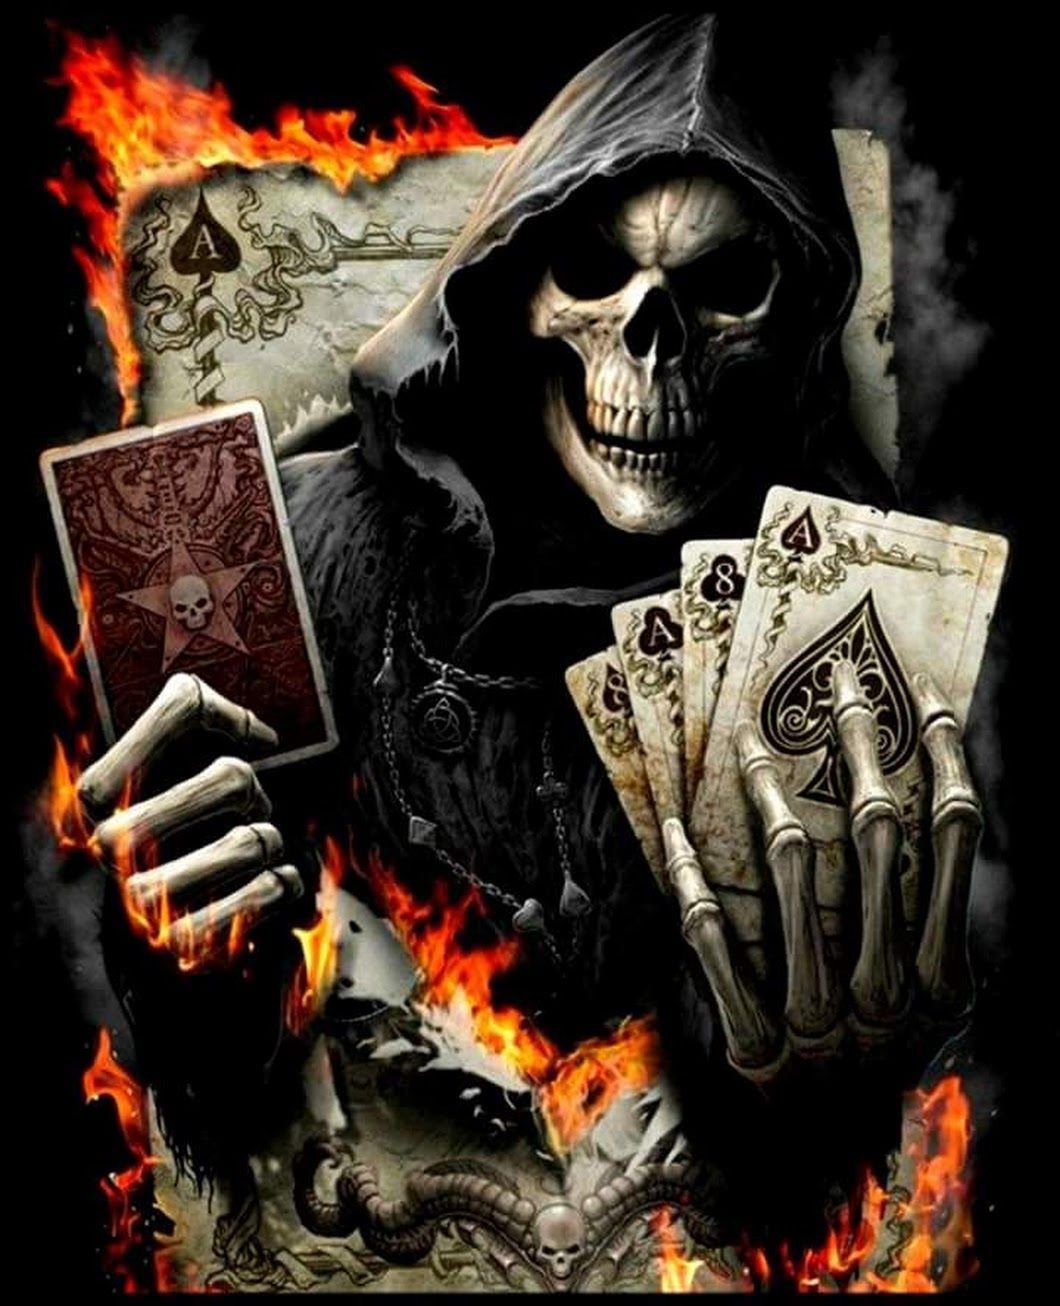 Grim reaper playing cards Meme Generator - Imgflip